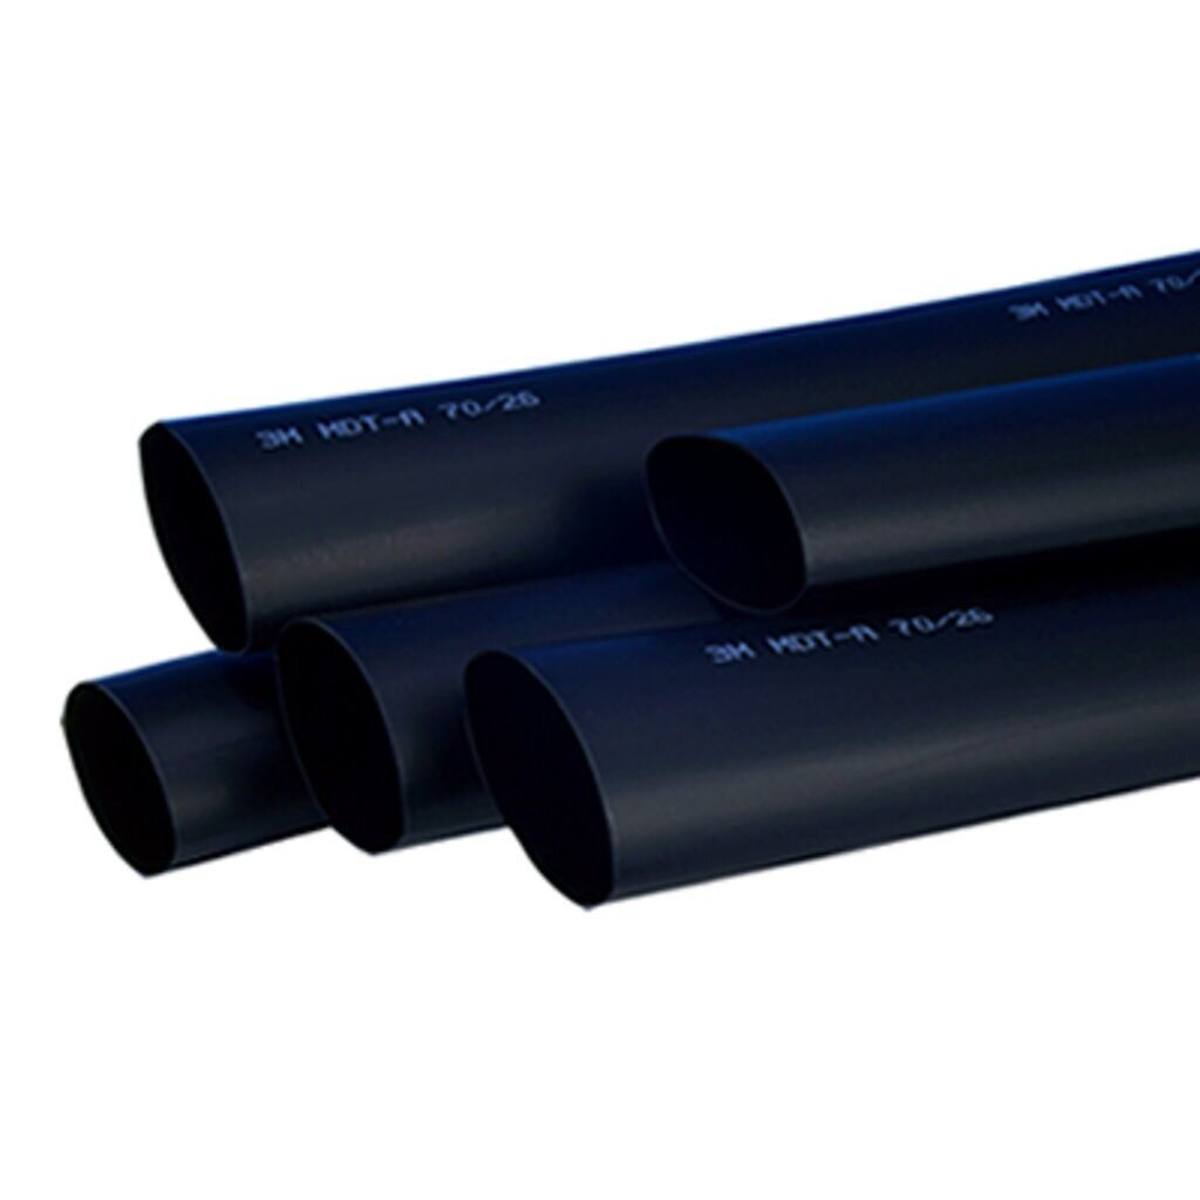 3M MDT-A Tubo termorretráctil de pared media con adhesivo, negro, 12/3 mm, 1 m